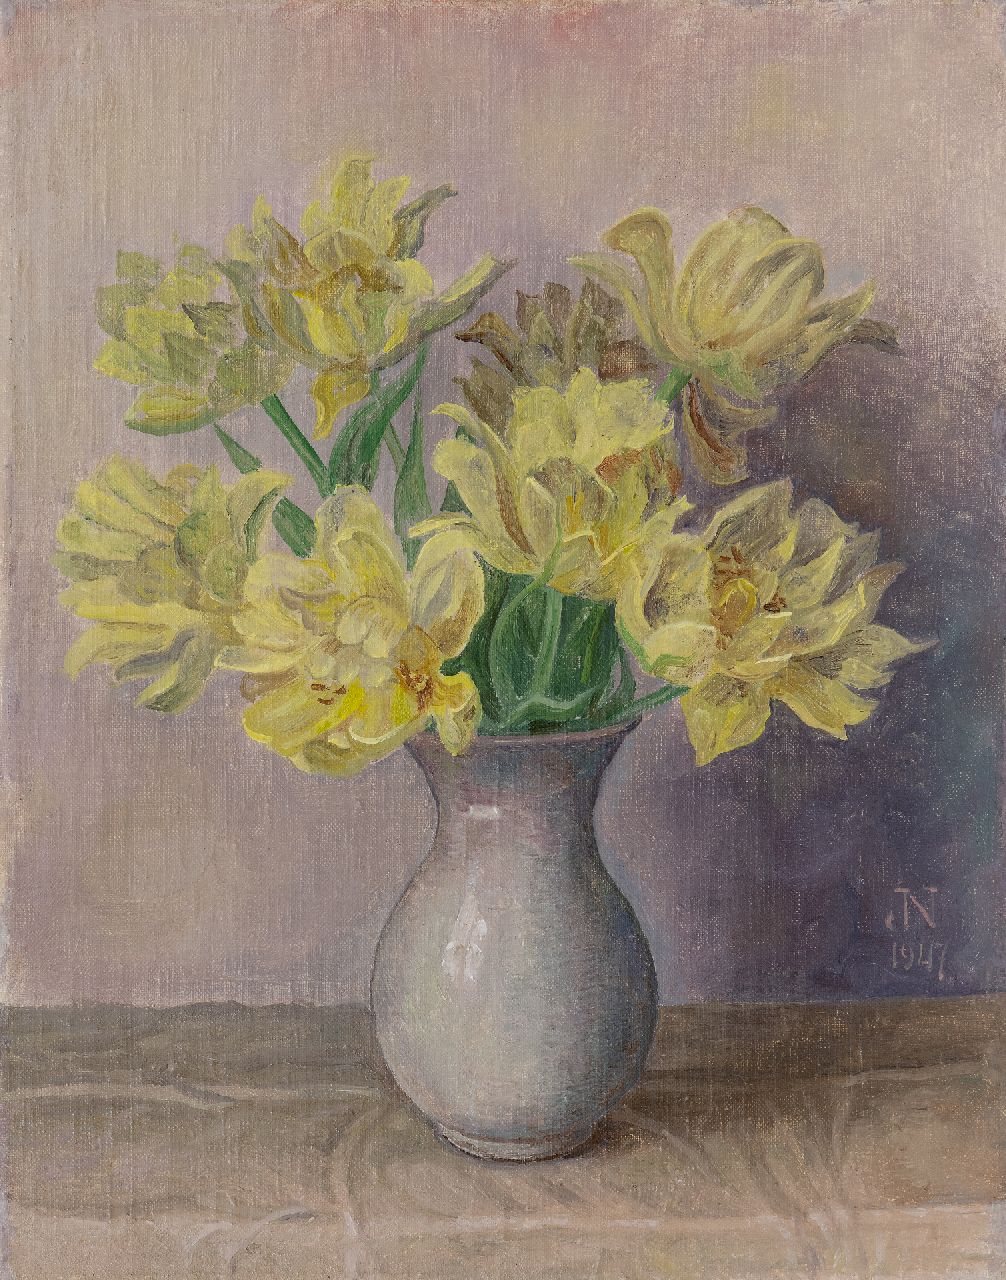 Nieweg J.  | Jakob Nieweg | Schilderijen te koop aangeboden | Gele tulpen, olieverf op doek 45,2 x 35,4 cm, gesigneerd rechtsonder met monogram en gedateerd 1947